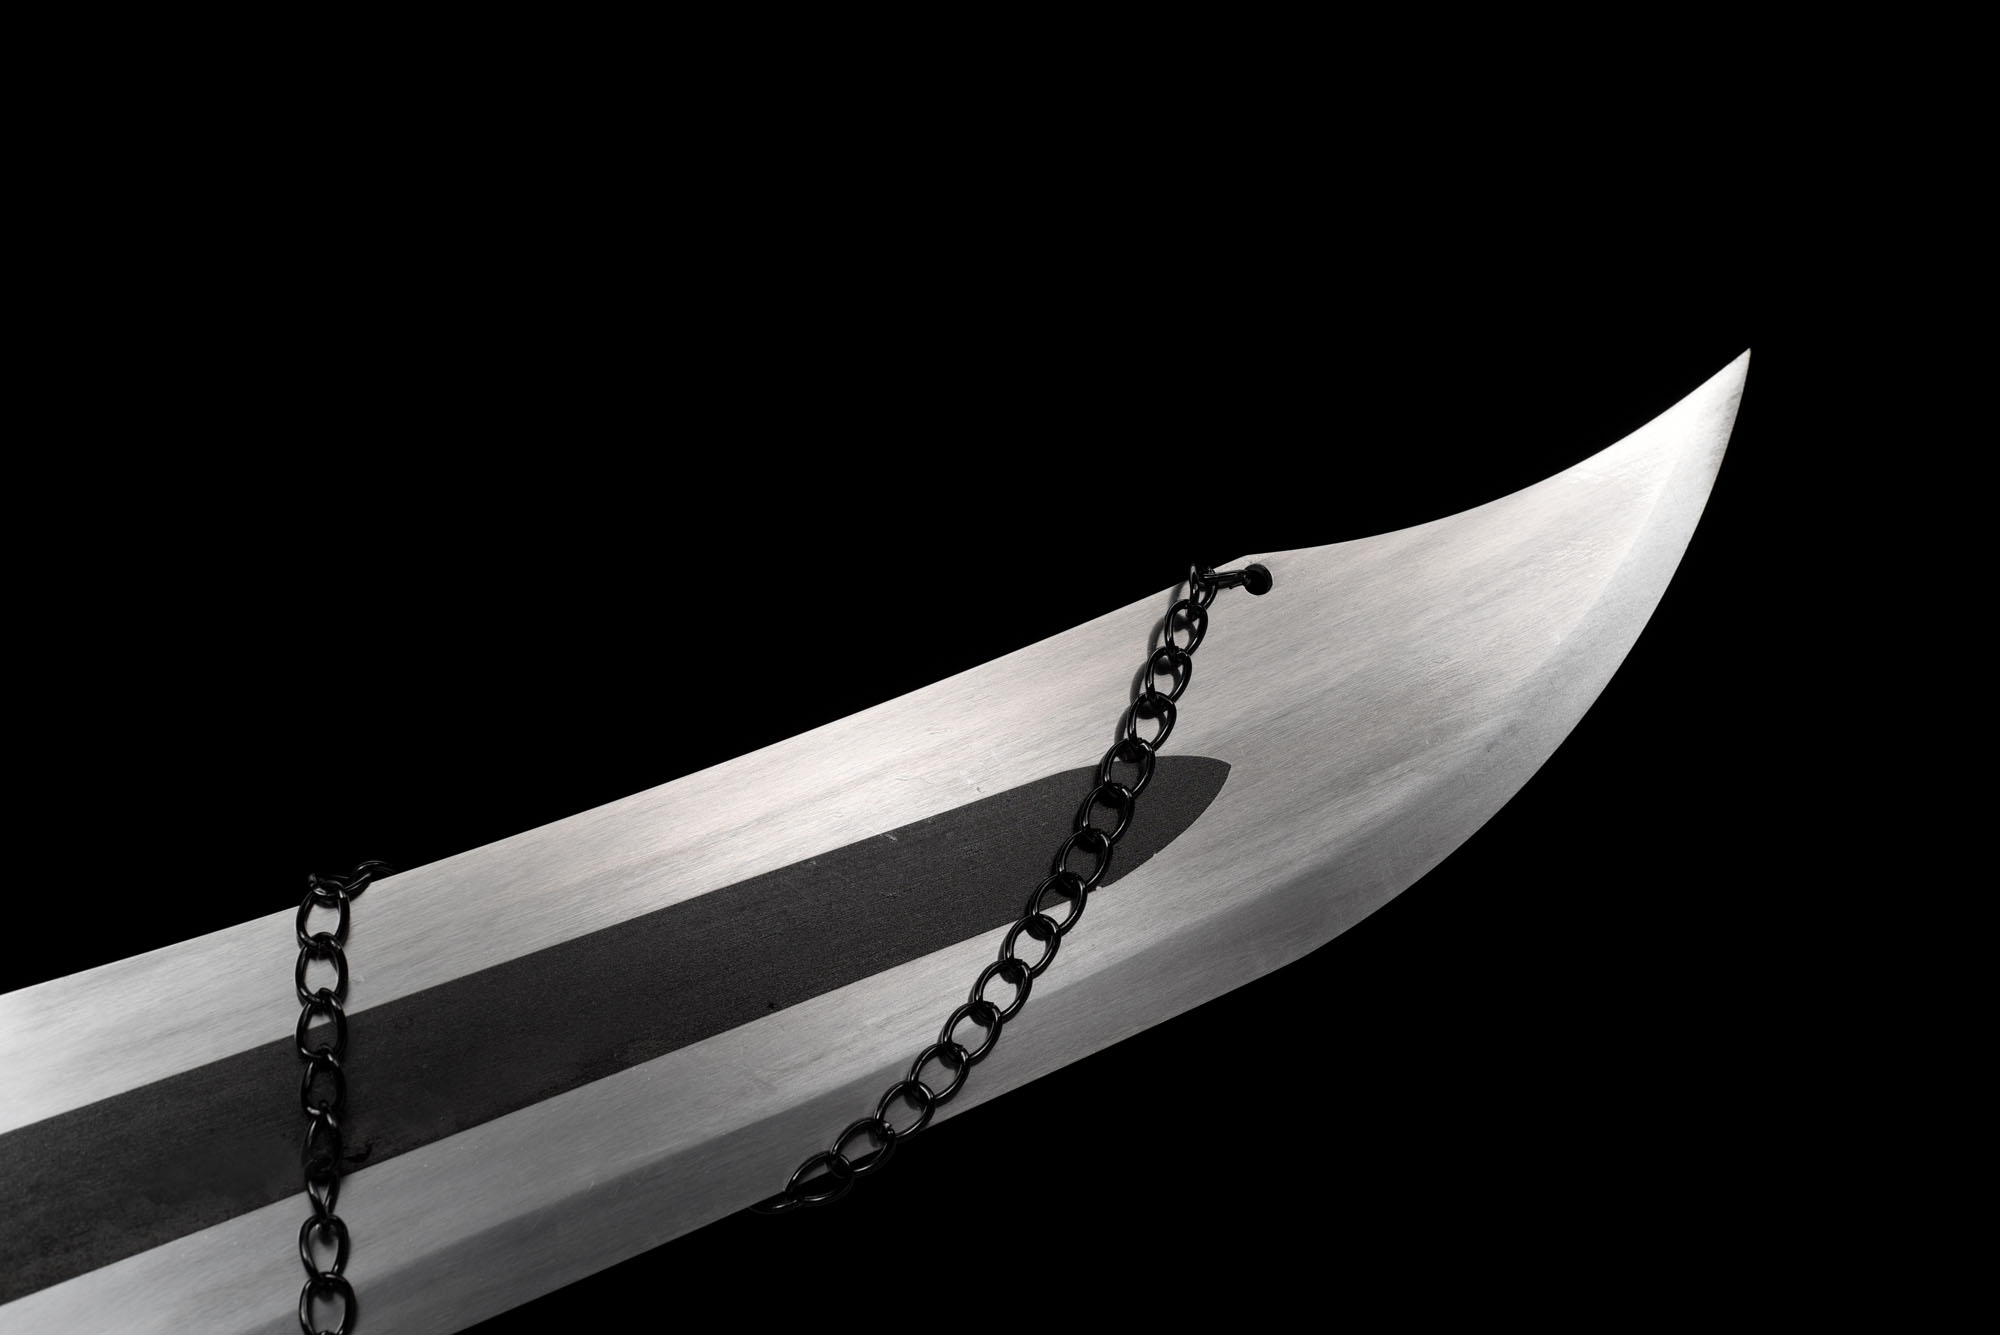 Bleach - Kurosaki Ichigo's Sword